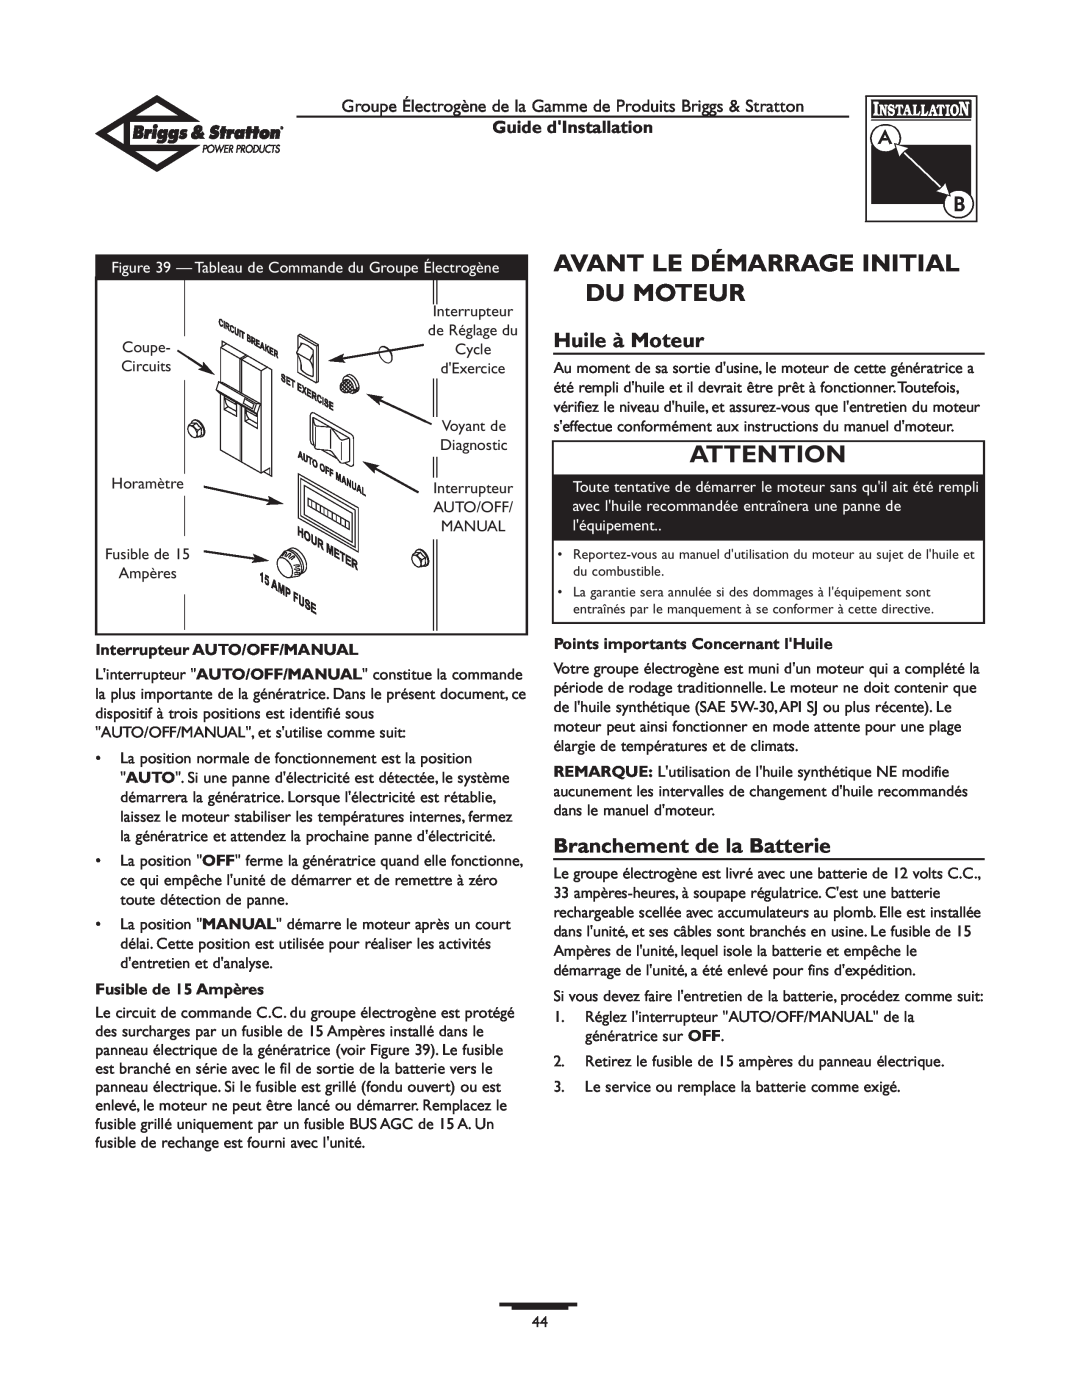 Briggs & Stratton 01938-0 manual Avant Le Démarrage Initial Du Moteur, Huile à Moteur, Branchement de la Batterie 